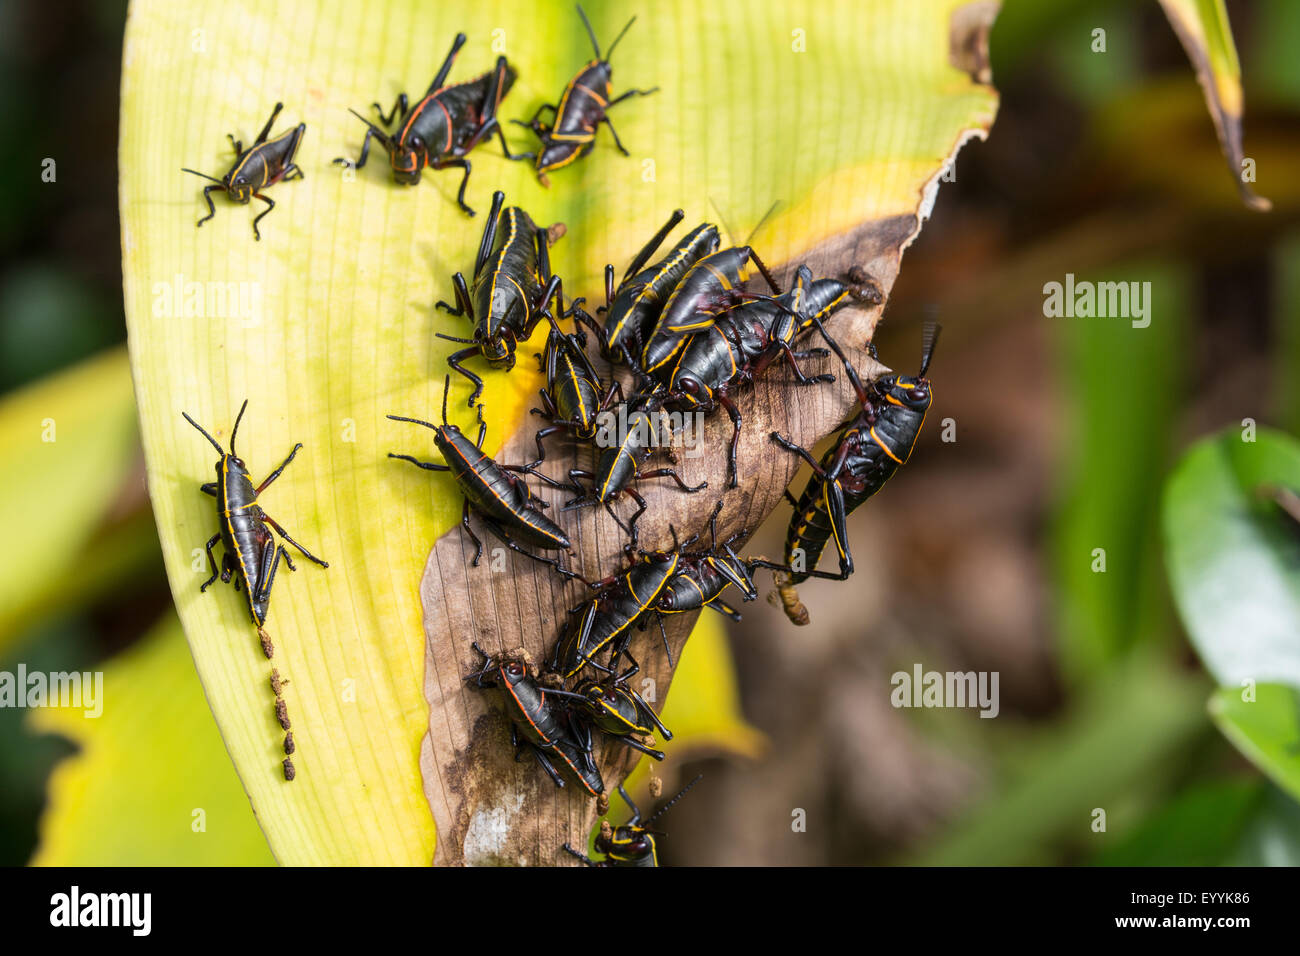 Eastern lubber grasshopper (Romalea microptera) nymphe, se nourrissant de plantes d'alimentation, USA, Floride Banque D'Images